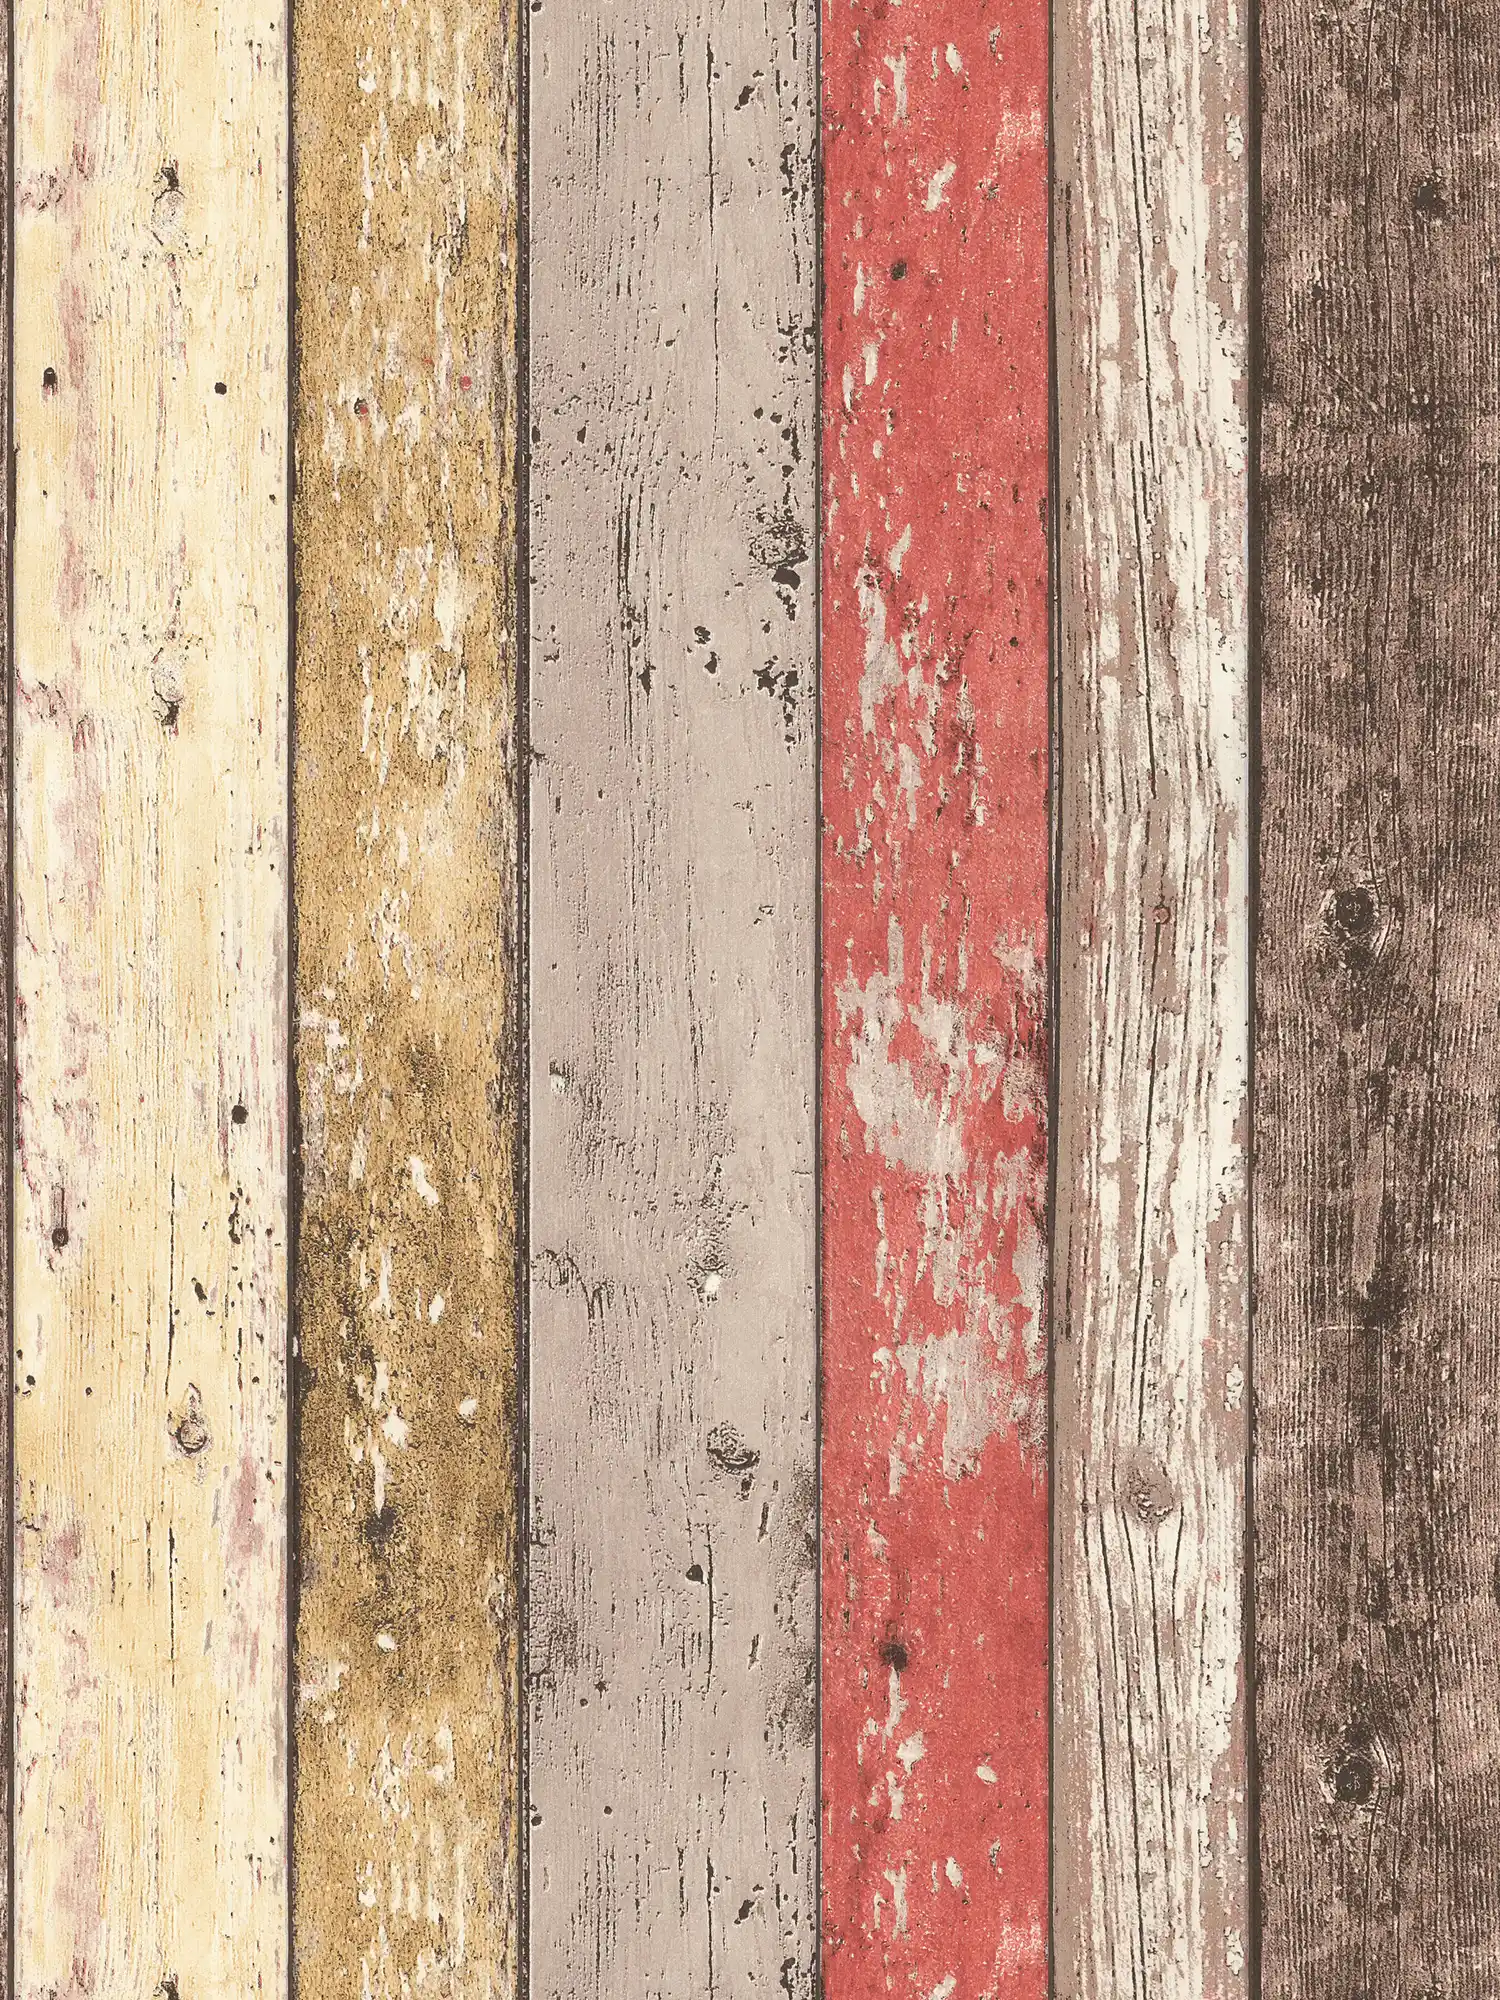 Holztapete mit Used Optik für Vintage & Landhausstil – Braun, Rot, Beige
